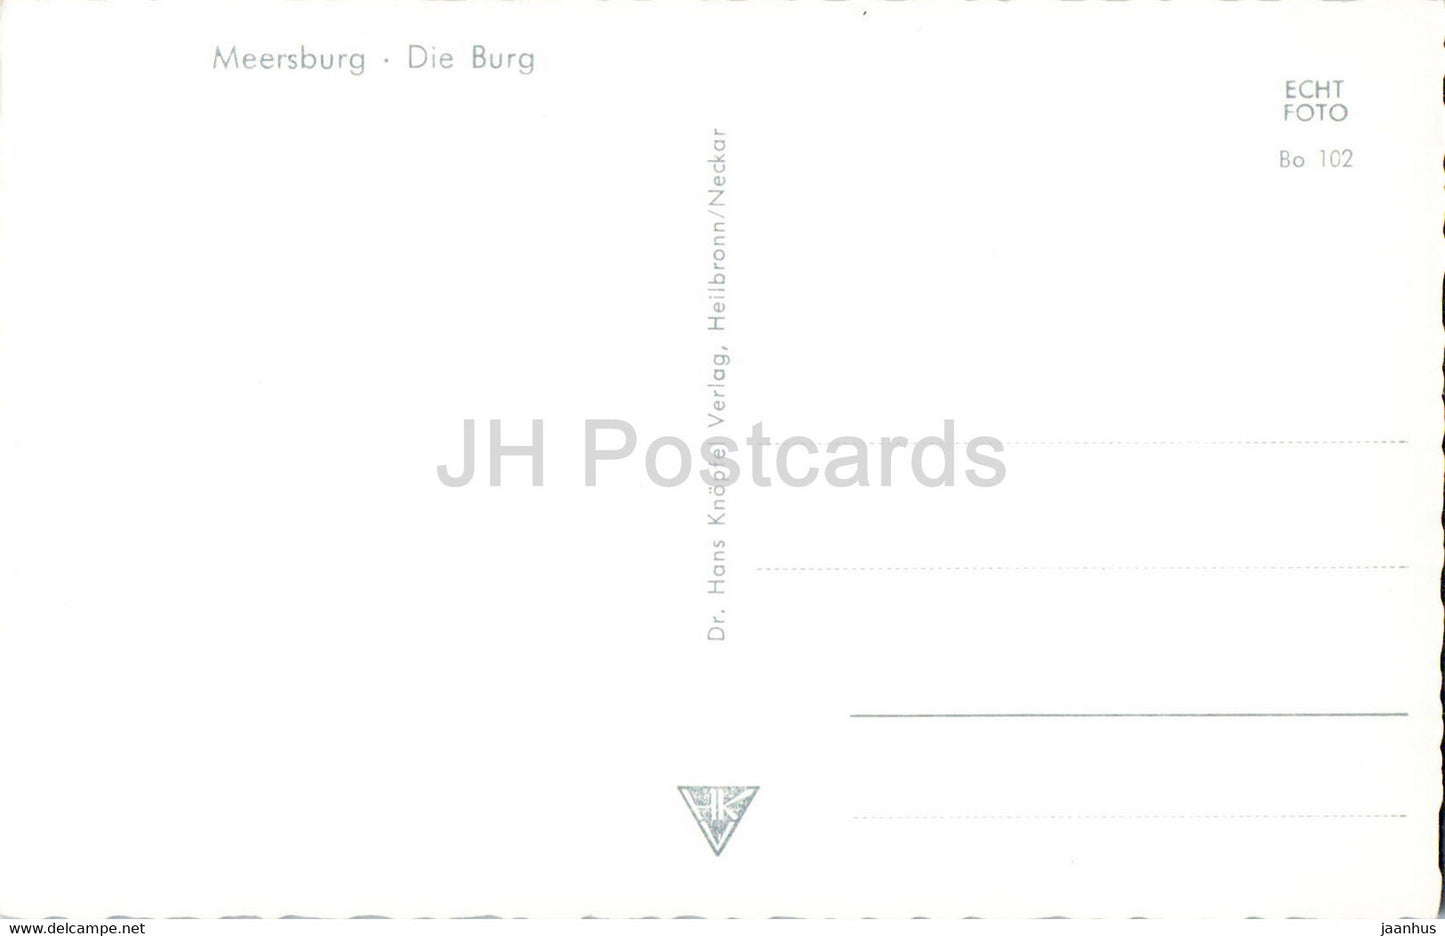 Meersburg - Die Burg - Burg - alte Postkarte - Deutschland - unbenutzt